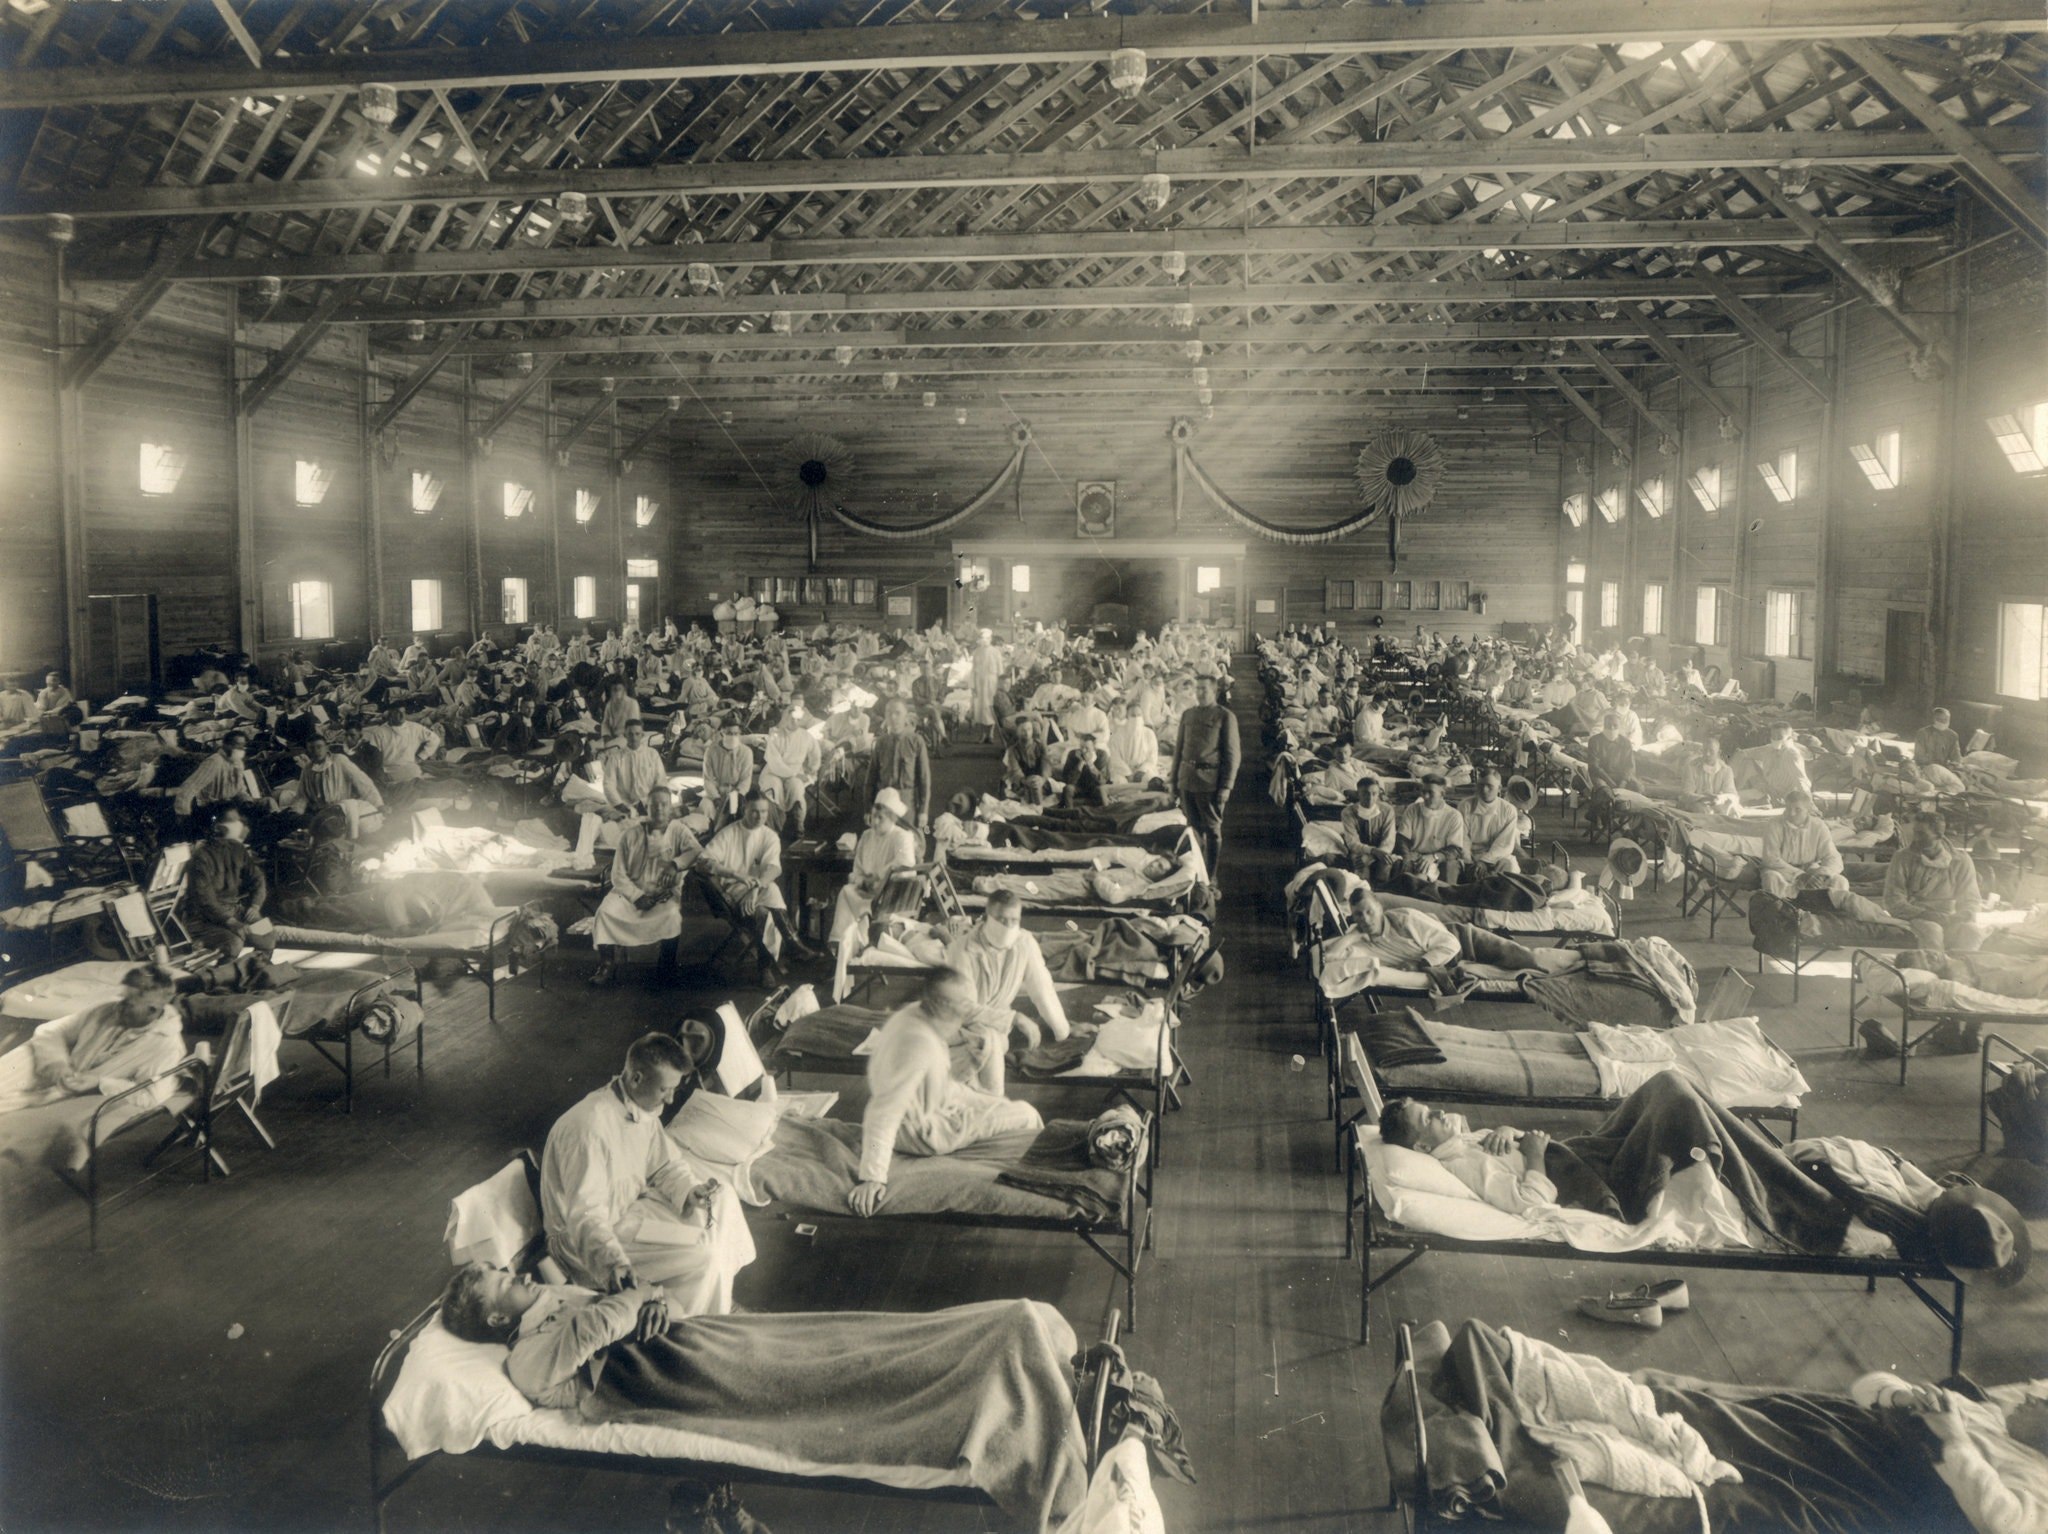 Spanische Grippe: Camp Funston in Fort Riley, Kansas während der spanischen Grippe